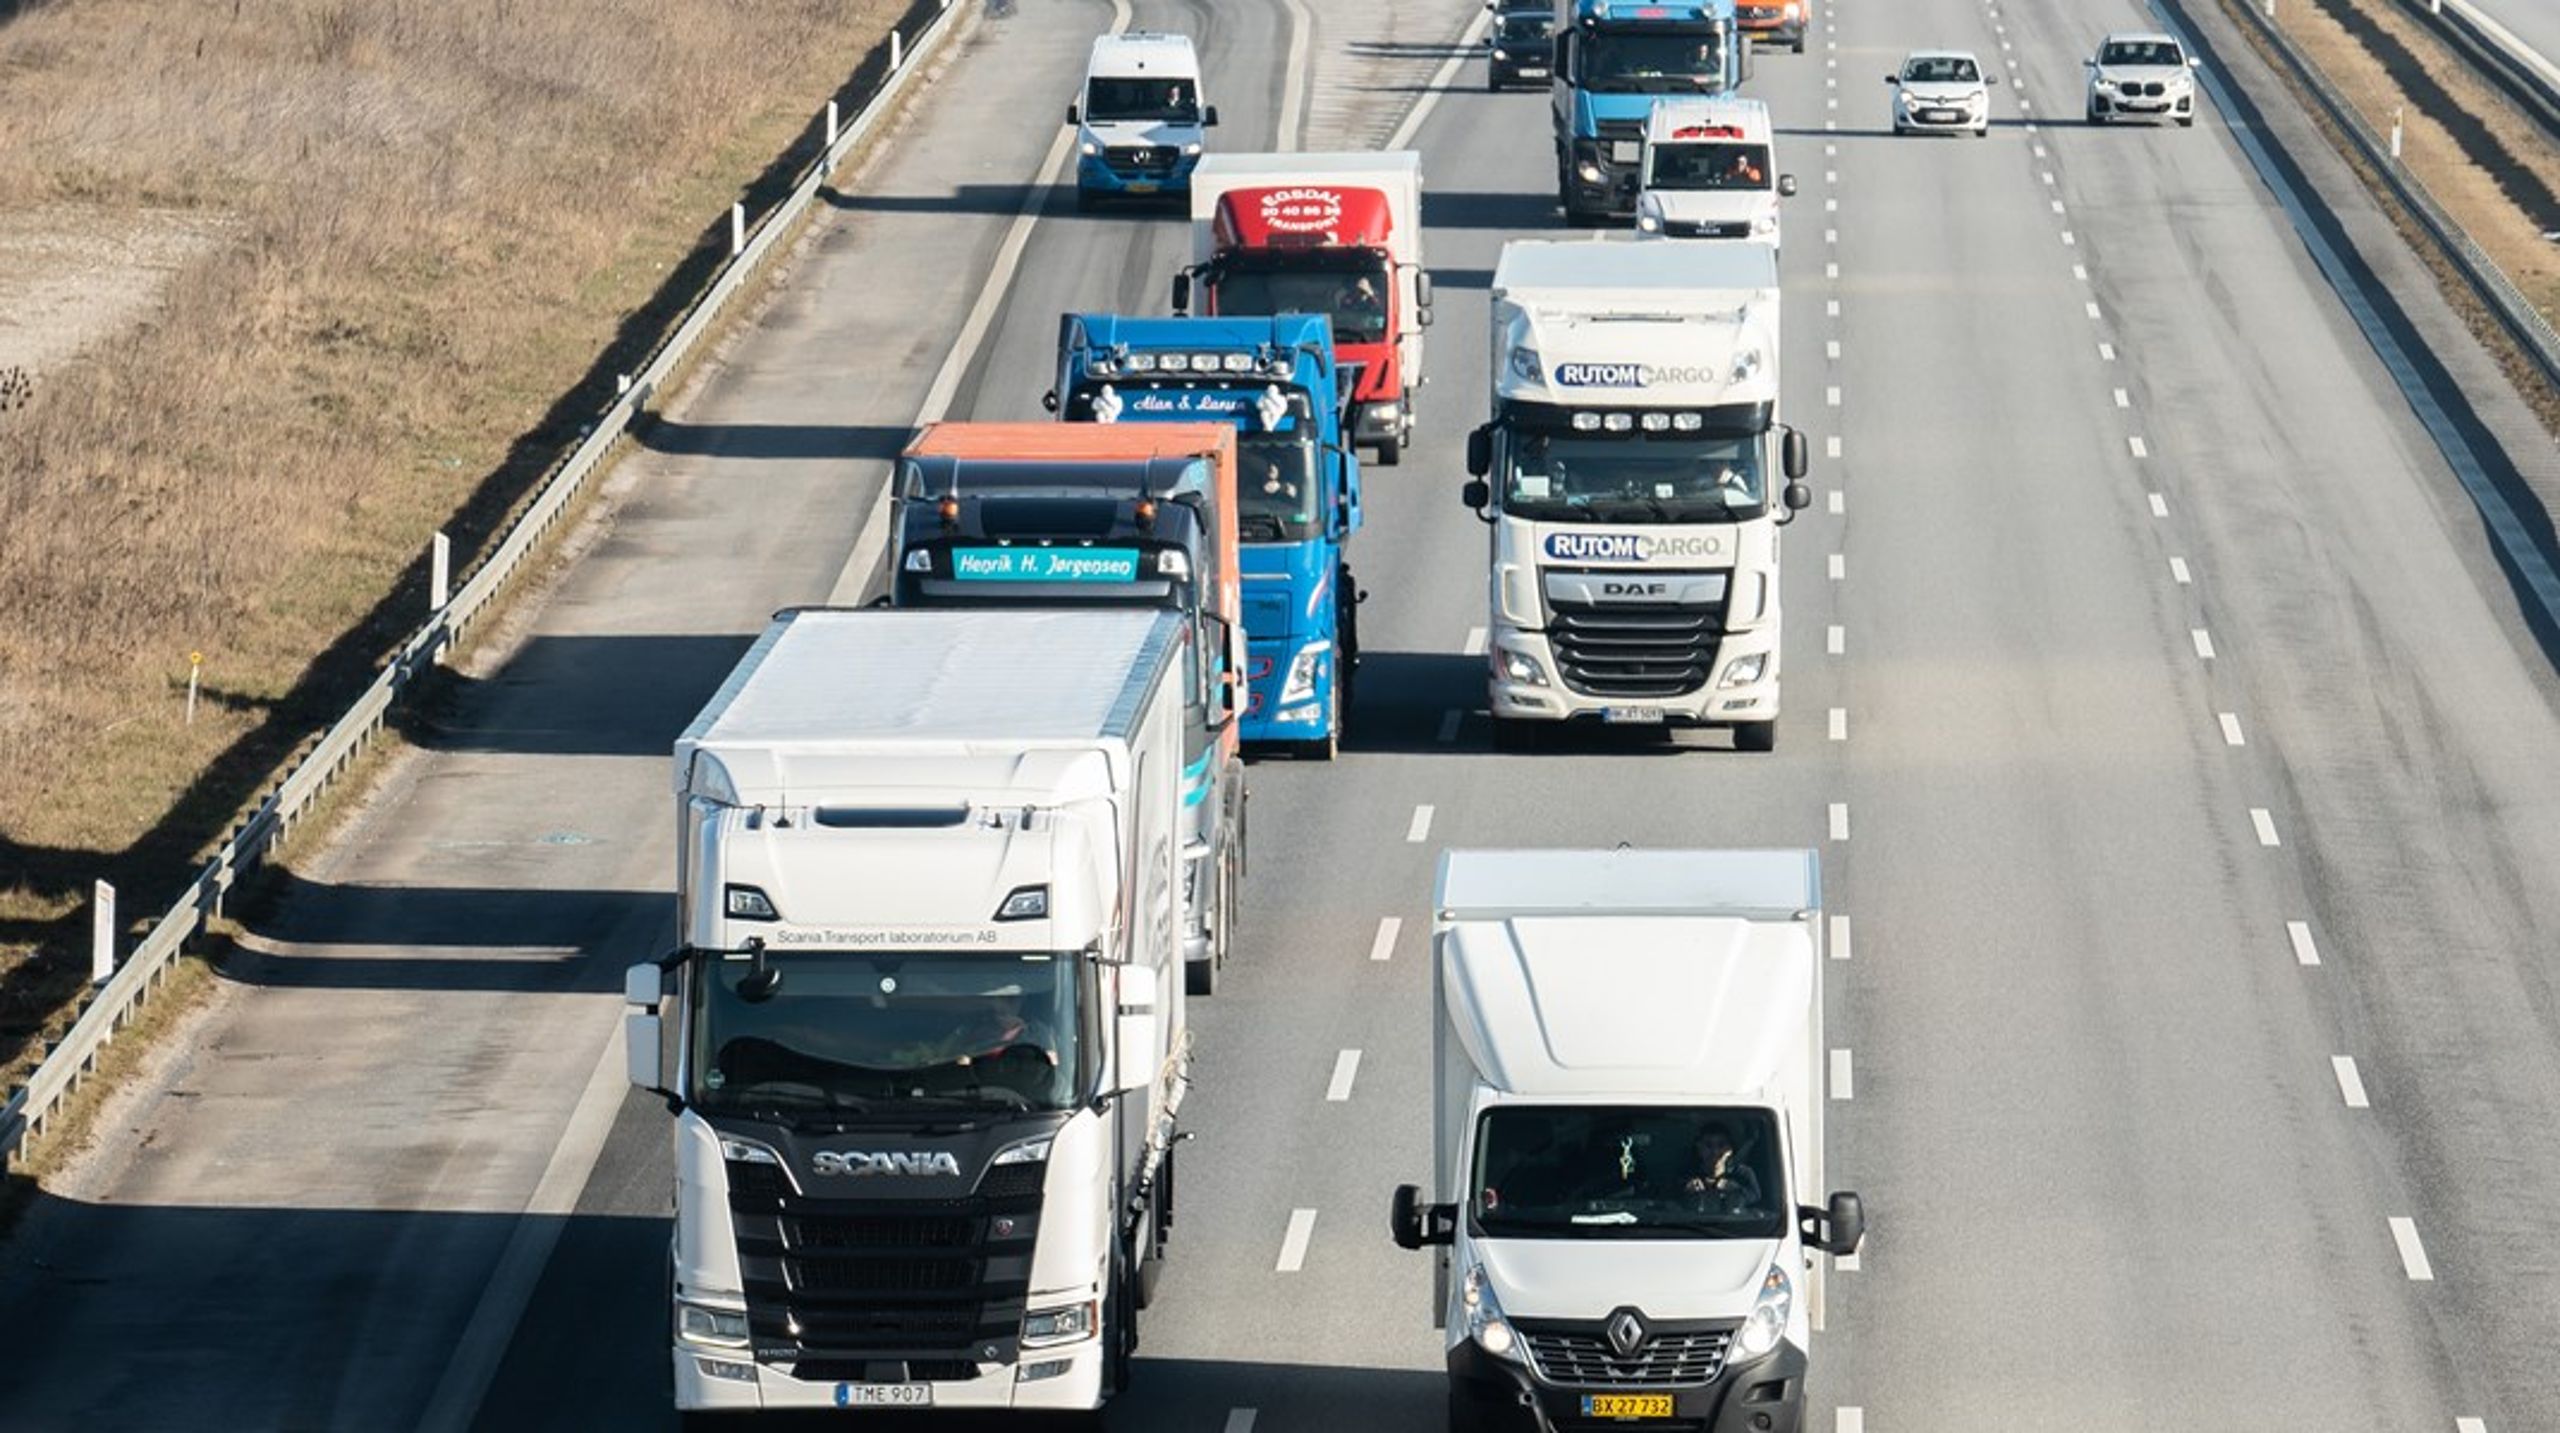 El-lastbiler er stadig væsentlig dyrere at indkøbe end diesellastbiler, og de vognmænd, som ønsker at investere i el-lastbiler, mødes samtidig af en virkelighed, hvor etableringen af ladeinfrastruktur både er bøvlet, langsommelig og dyr, skriver en række aktører.